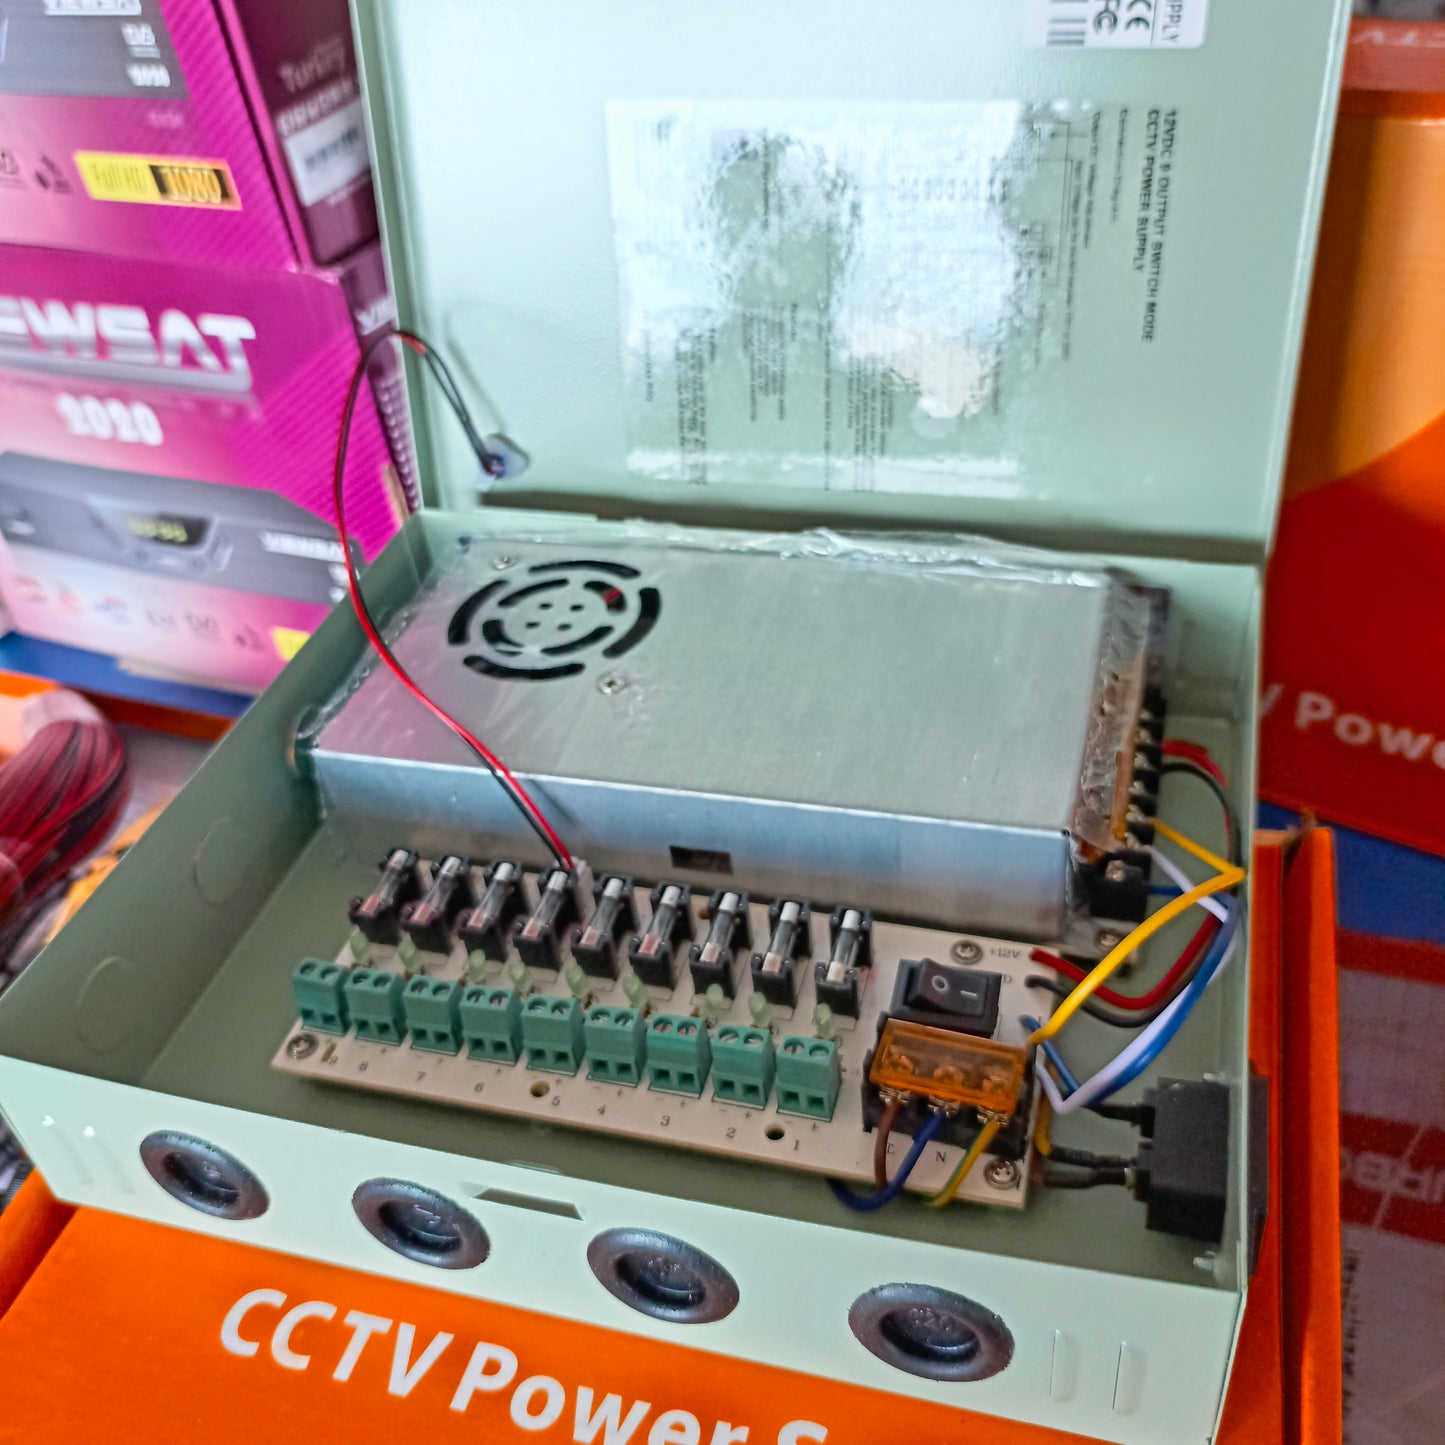 GENERIC 9-Way CCTV Power Supply Box - Brand New